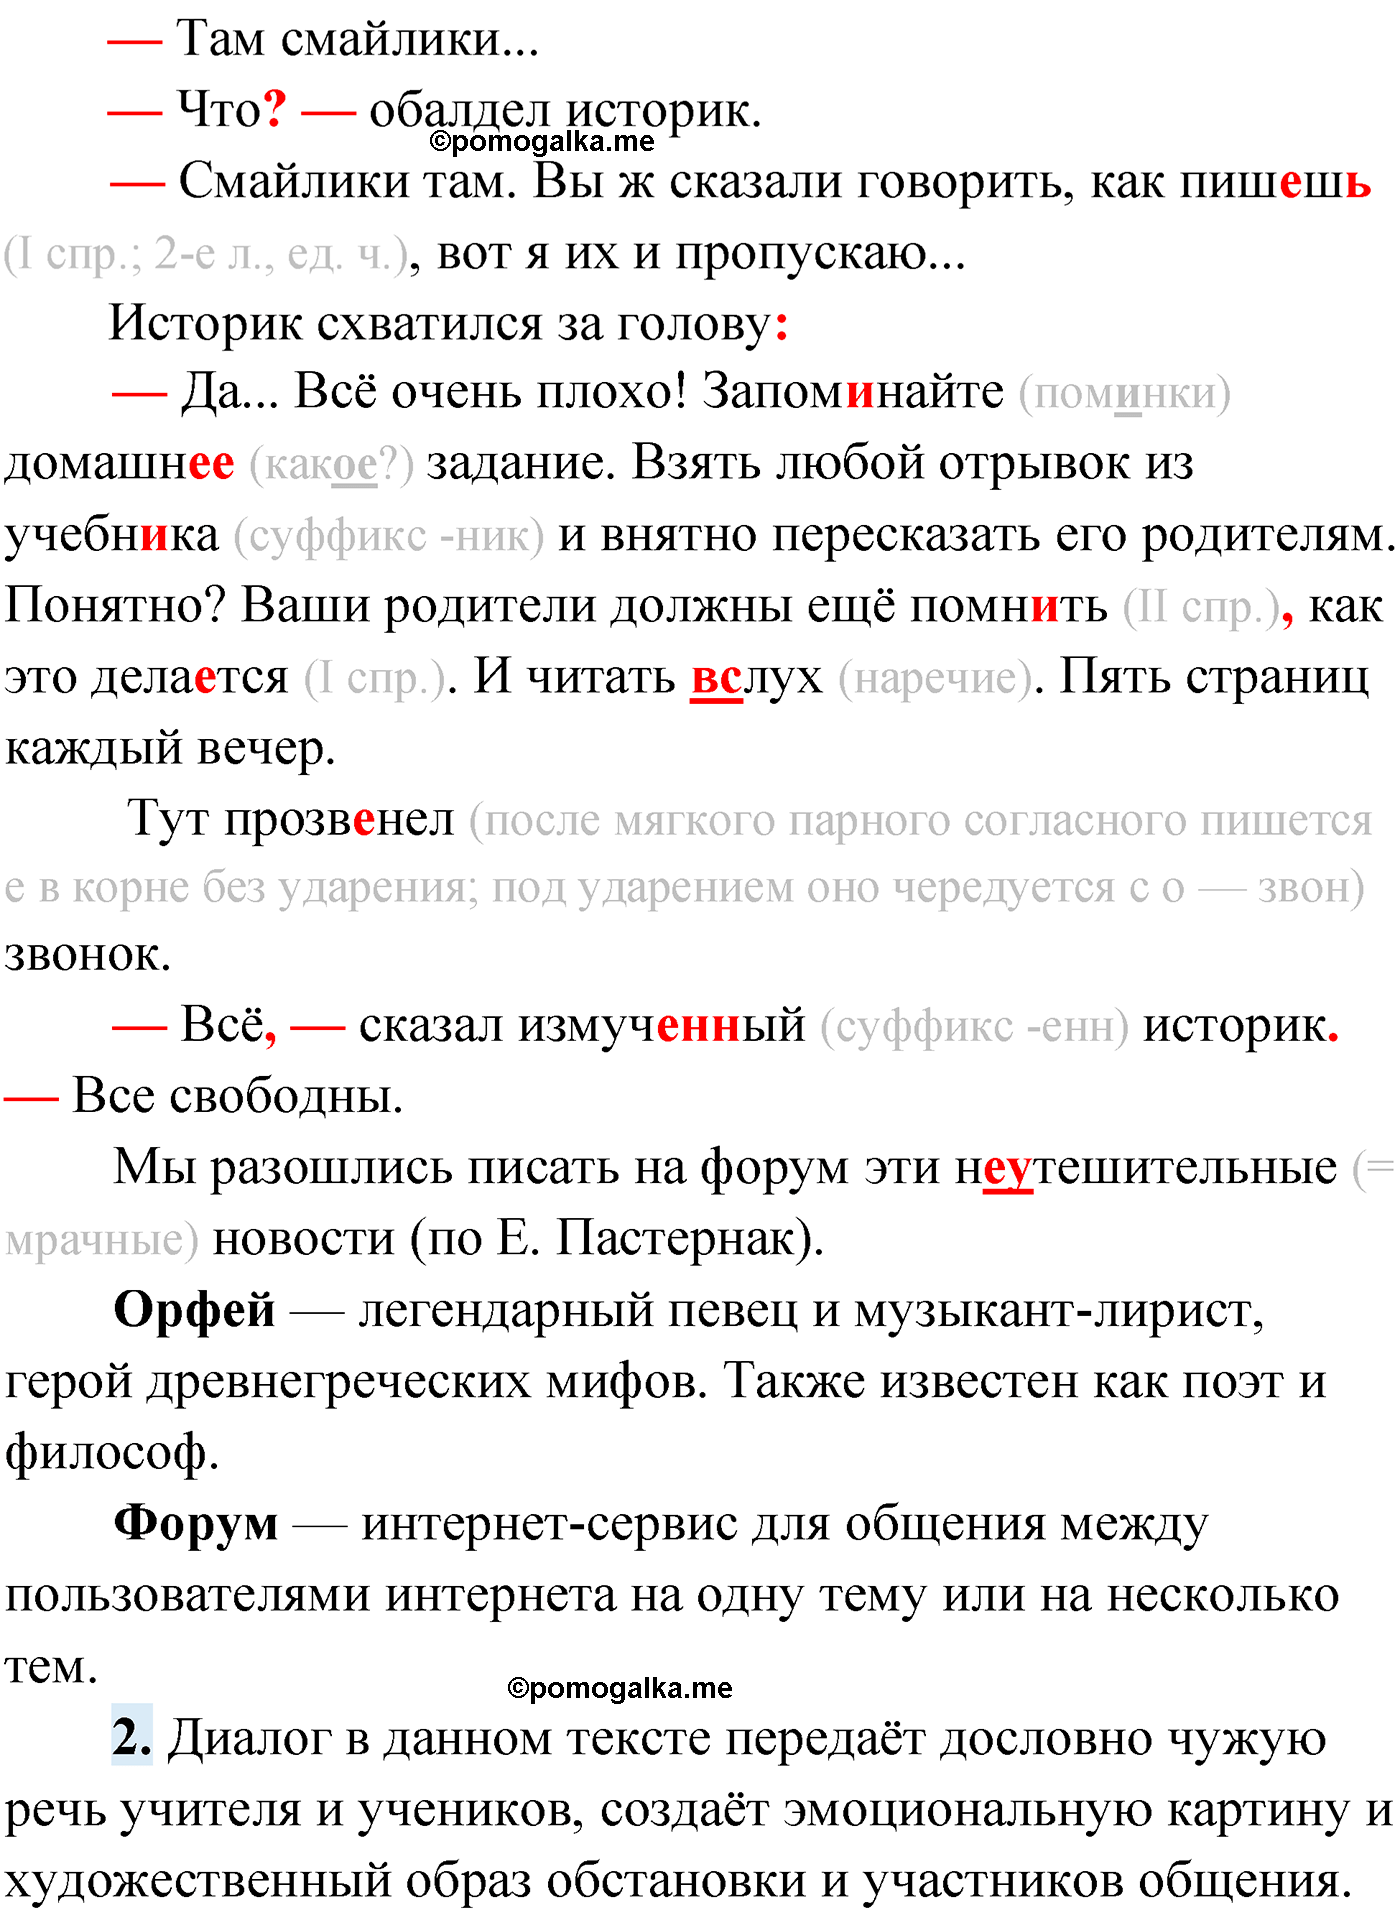 упражнение №334 русский язык 9 класс Мурина 2019 год